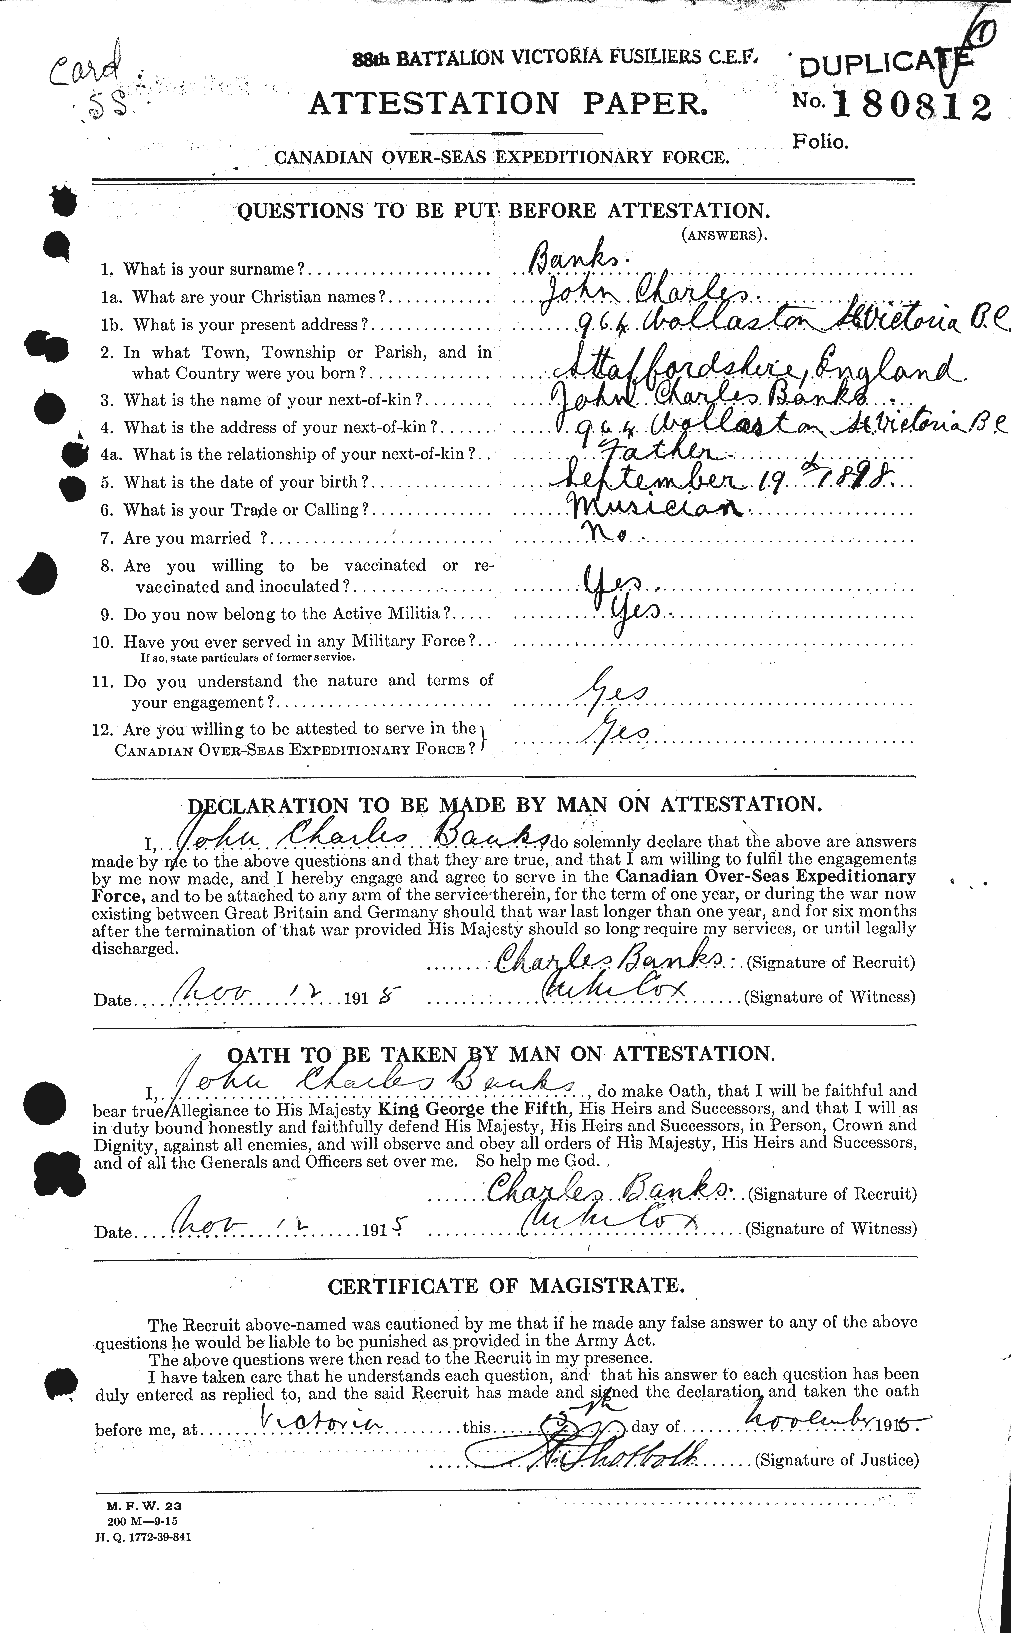 Dossiers du Personnel de la Première Guerre mondiale - CEC 224983a